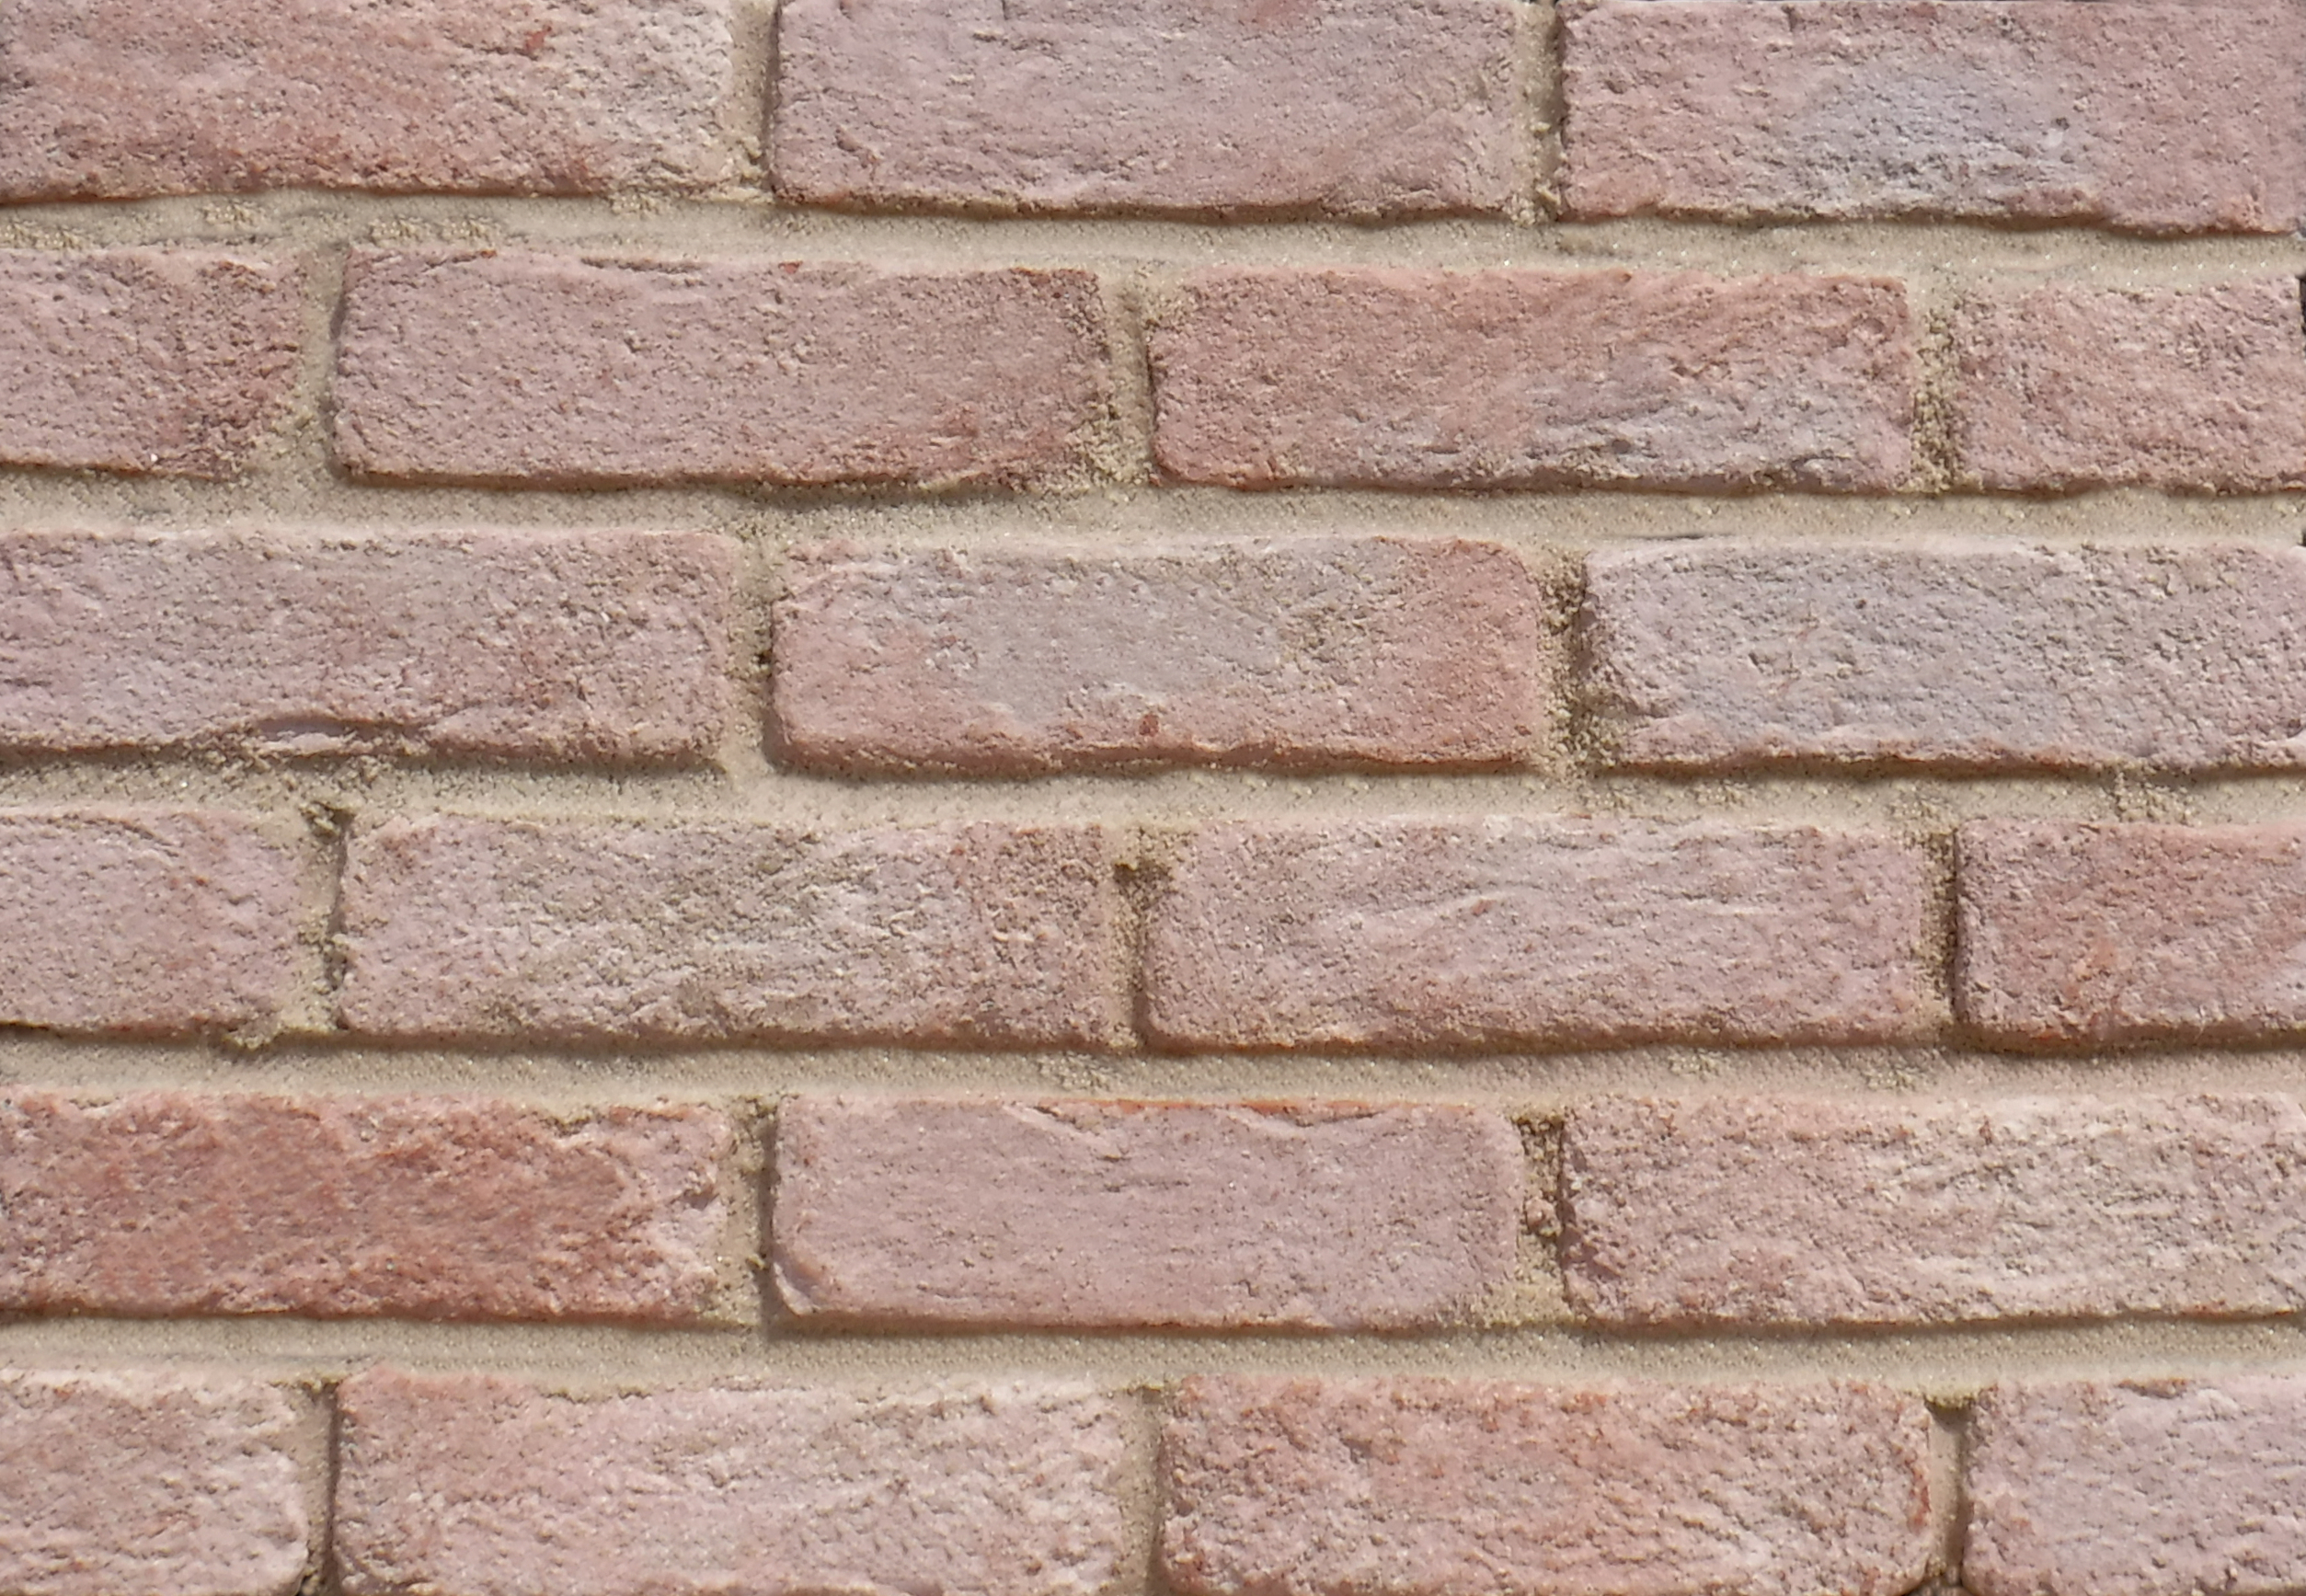 Shrewsbury Brick Slips